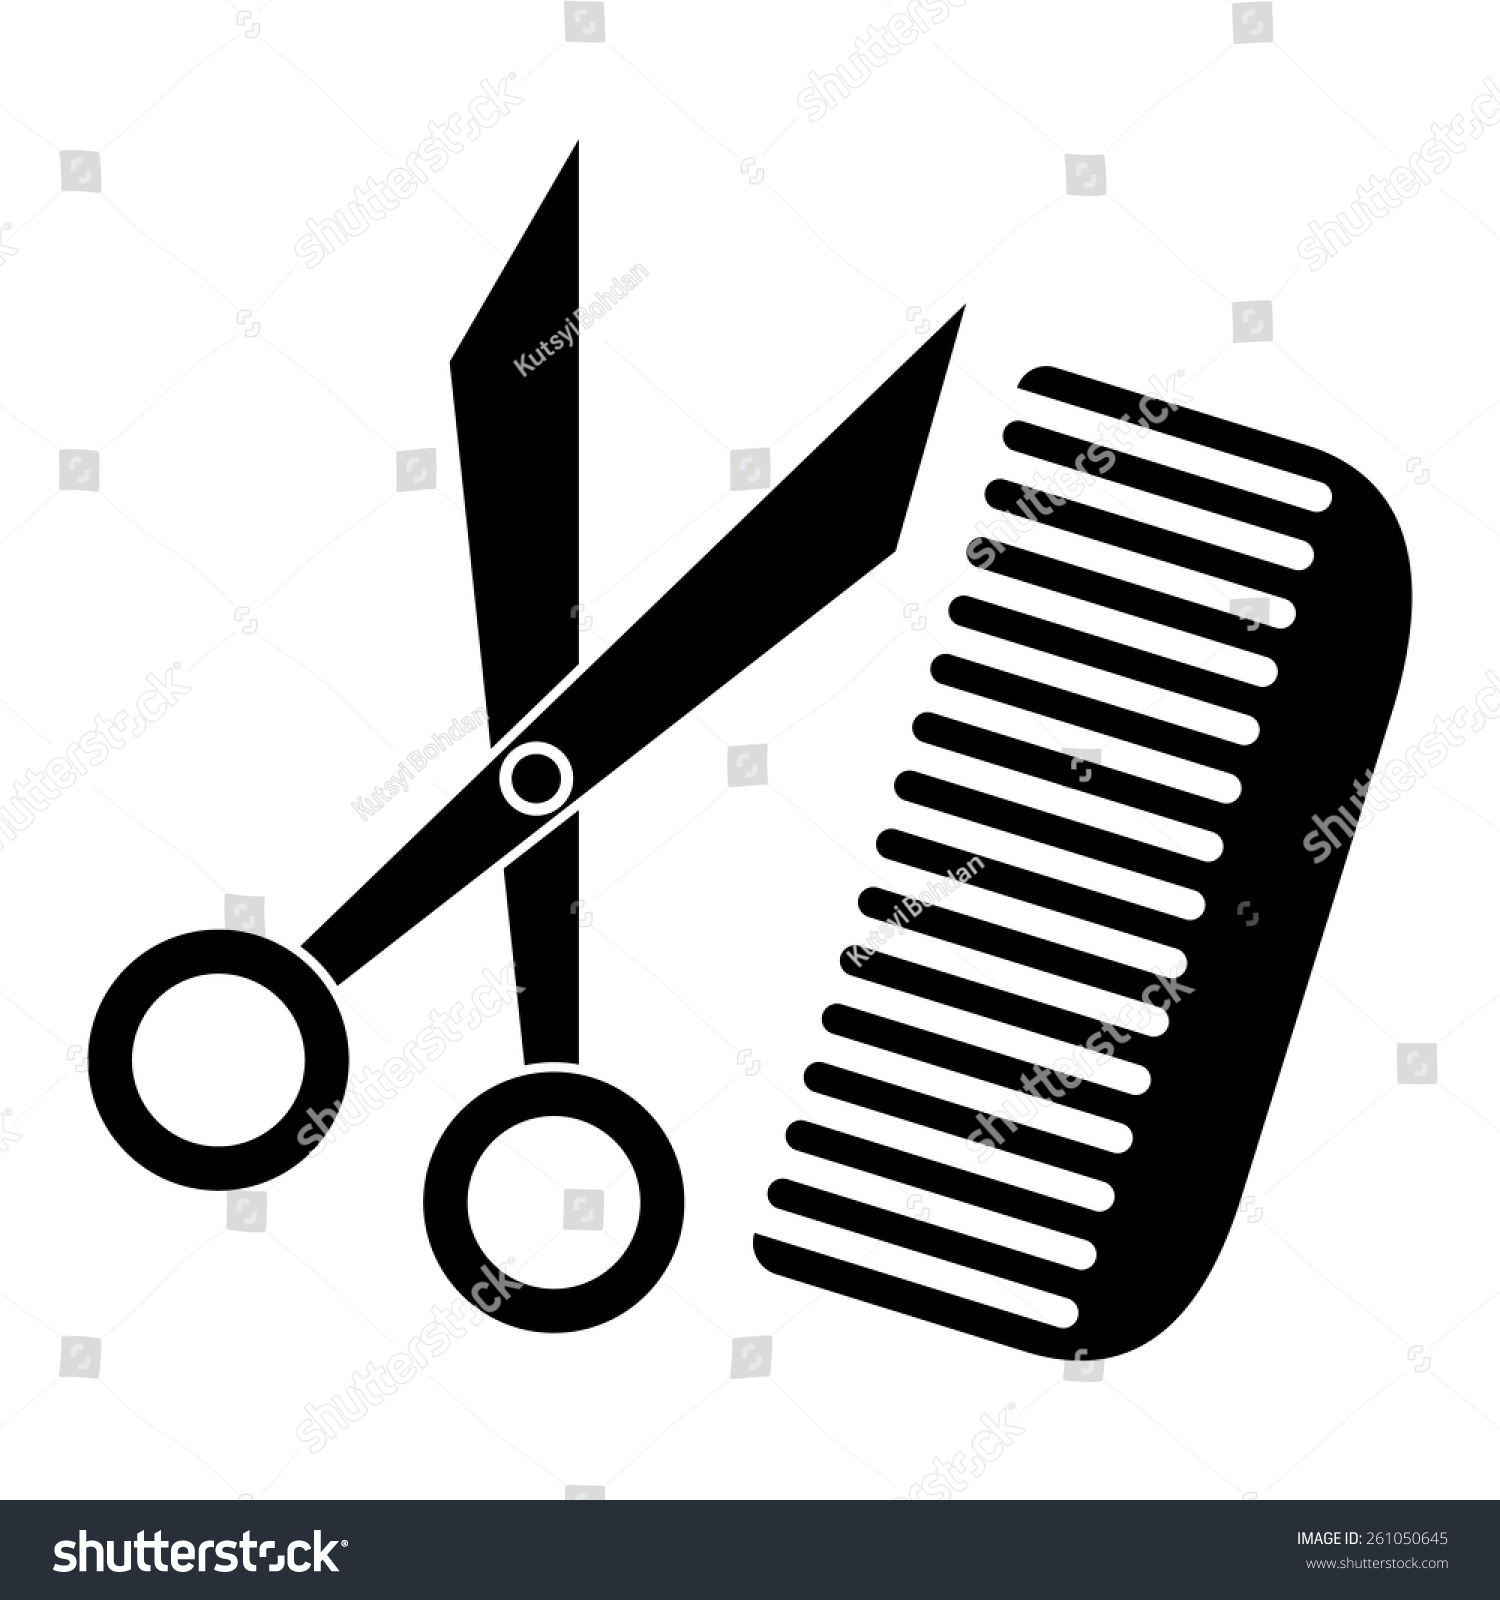 Vector Scissors And Comb - 261050645 : Shutterstock